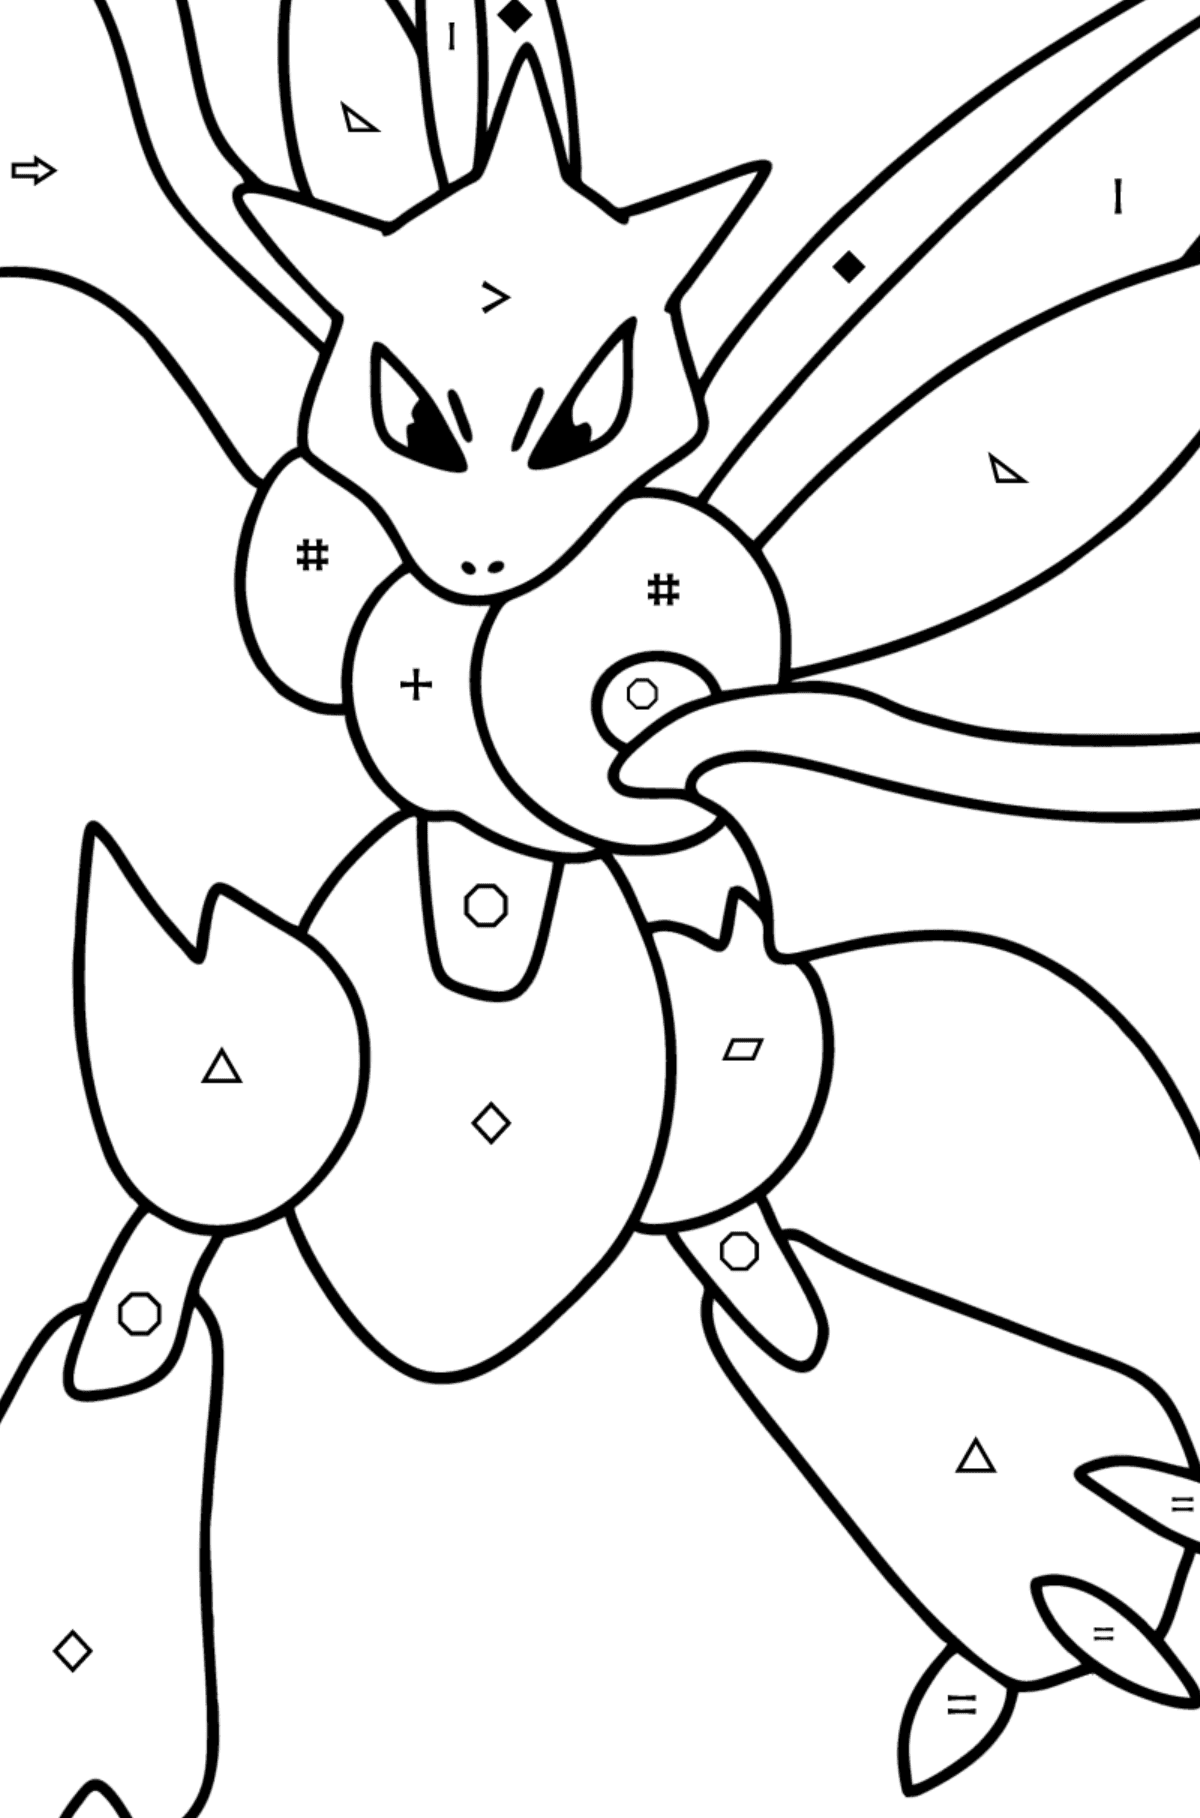 Tegning til fargelegging Pokémon Go Scyther - Fargelegge etter symboler og geometriske former for barn